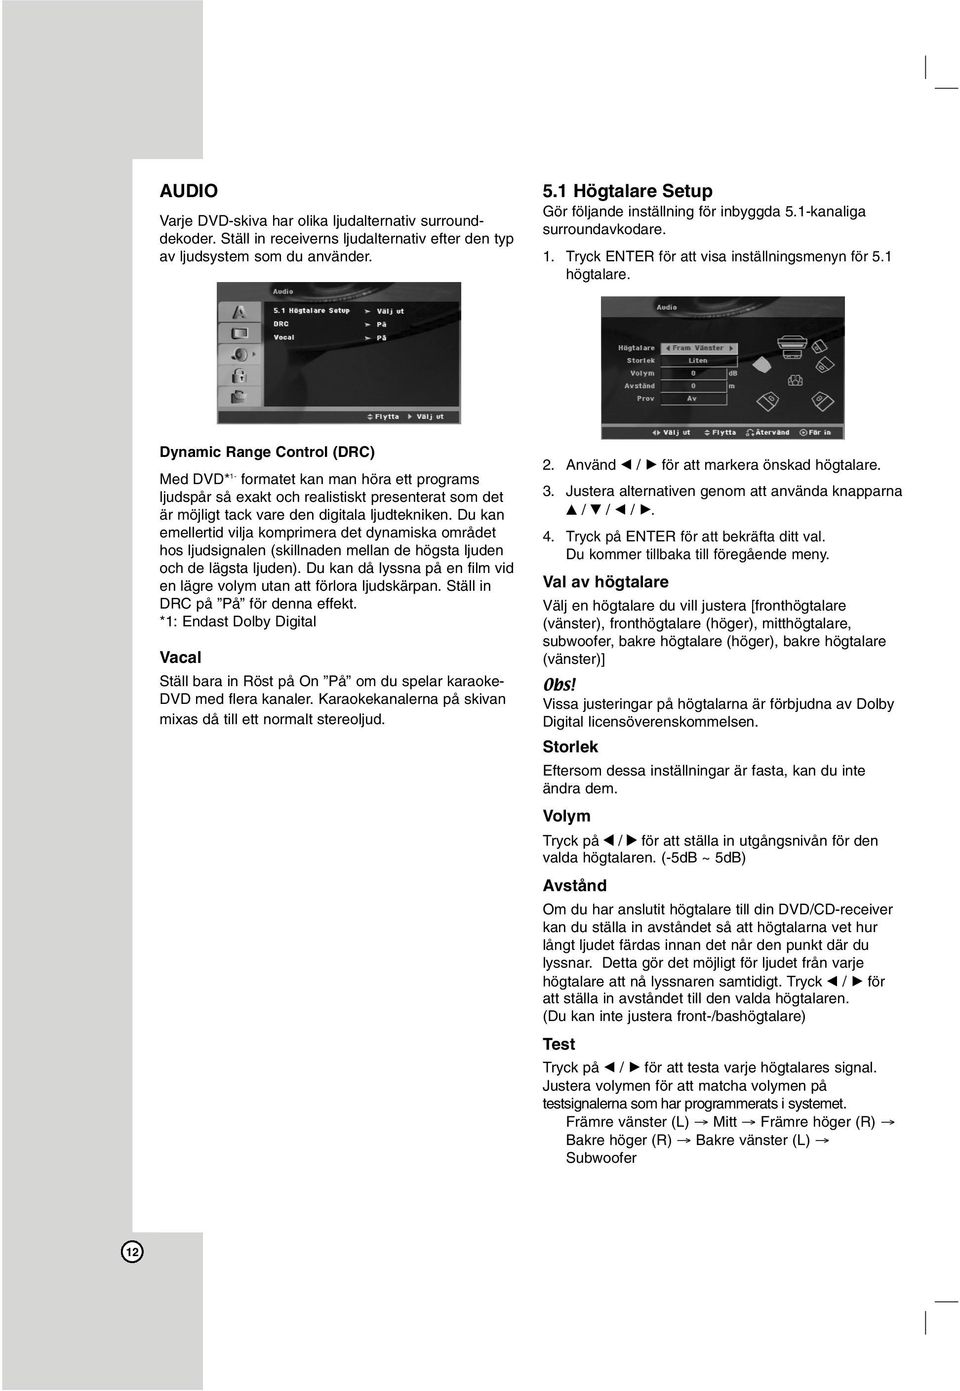 Dynamic Range Control (DRC) Med DVD* 1- formatet kan man höra ett programs ljudspår så exakt och realistiskt presenterat som det är möjligt tack vare den digitala ljudtekniken.